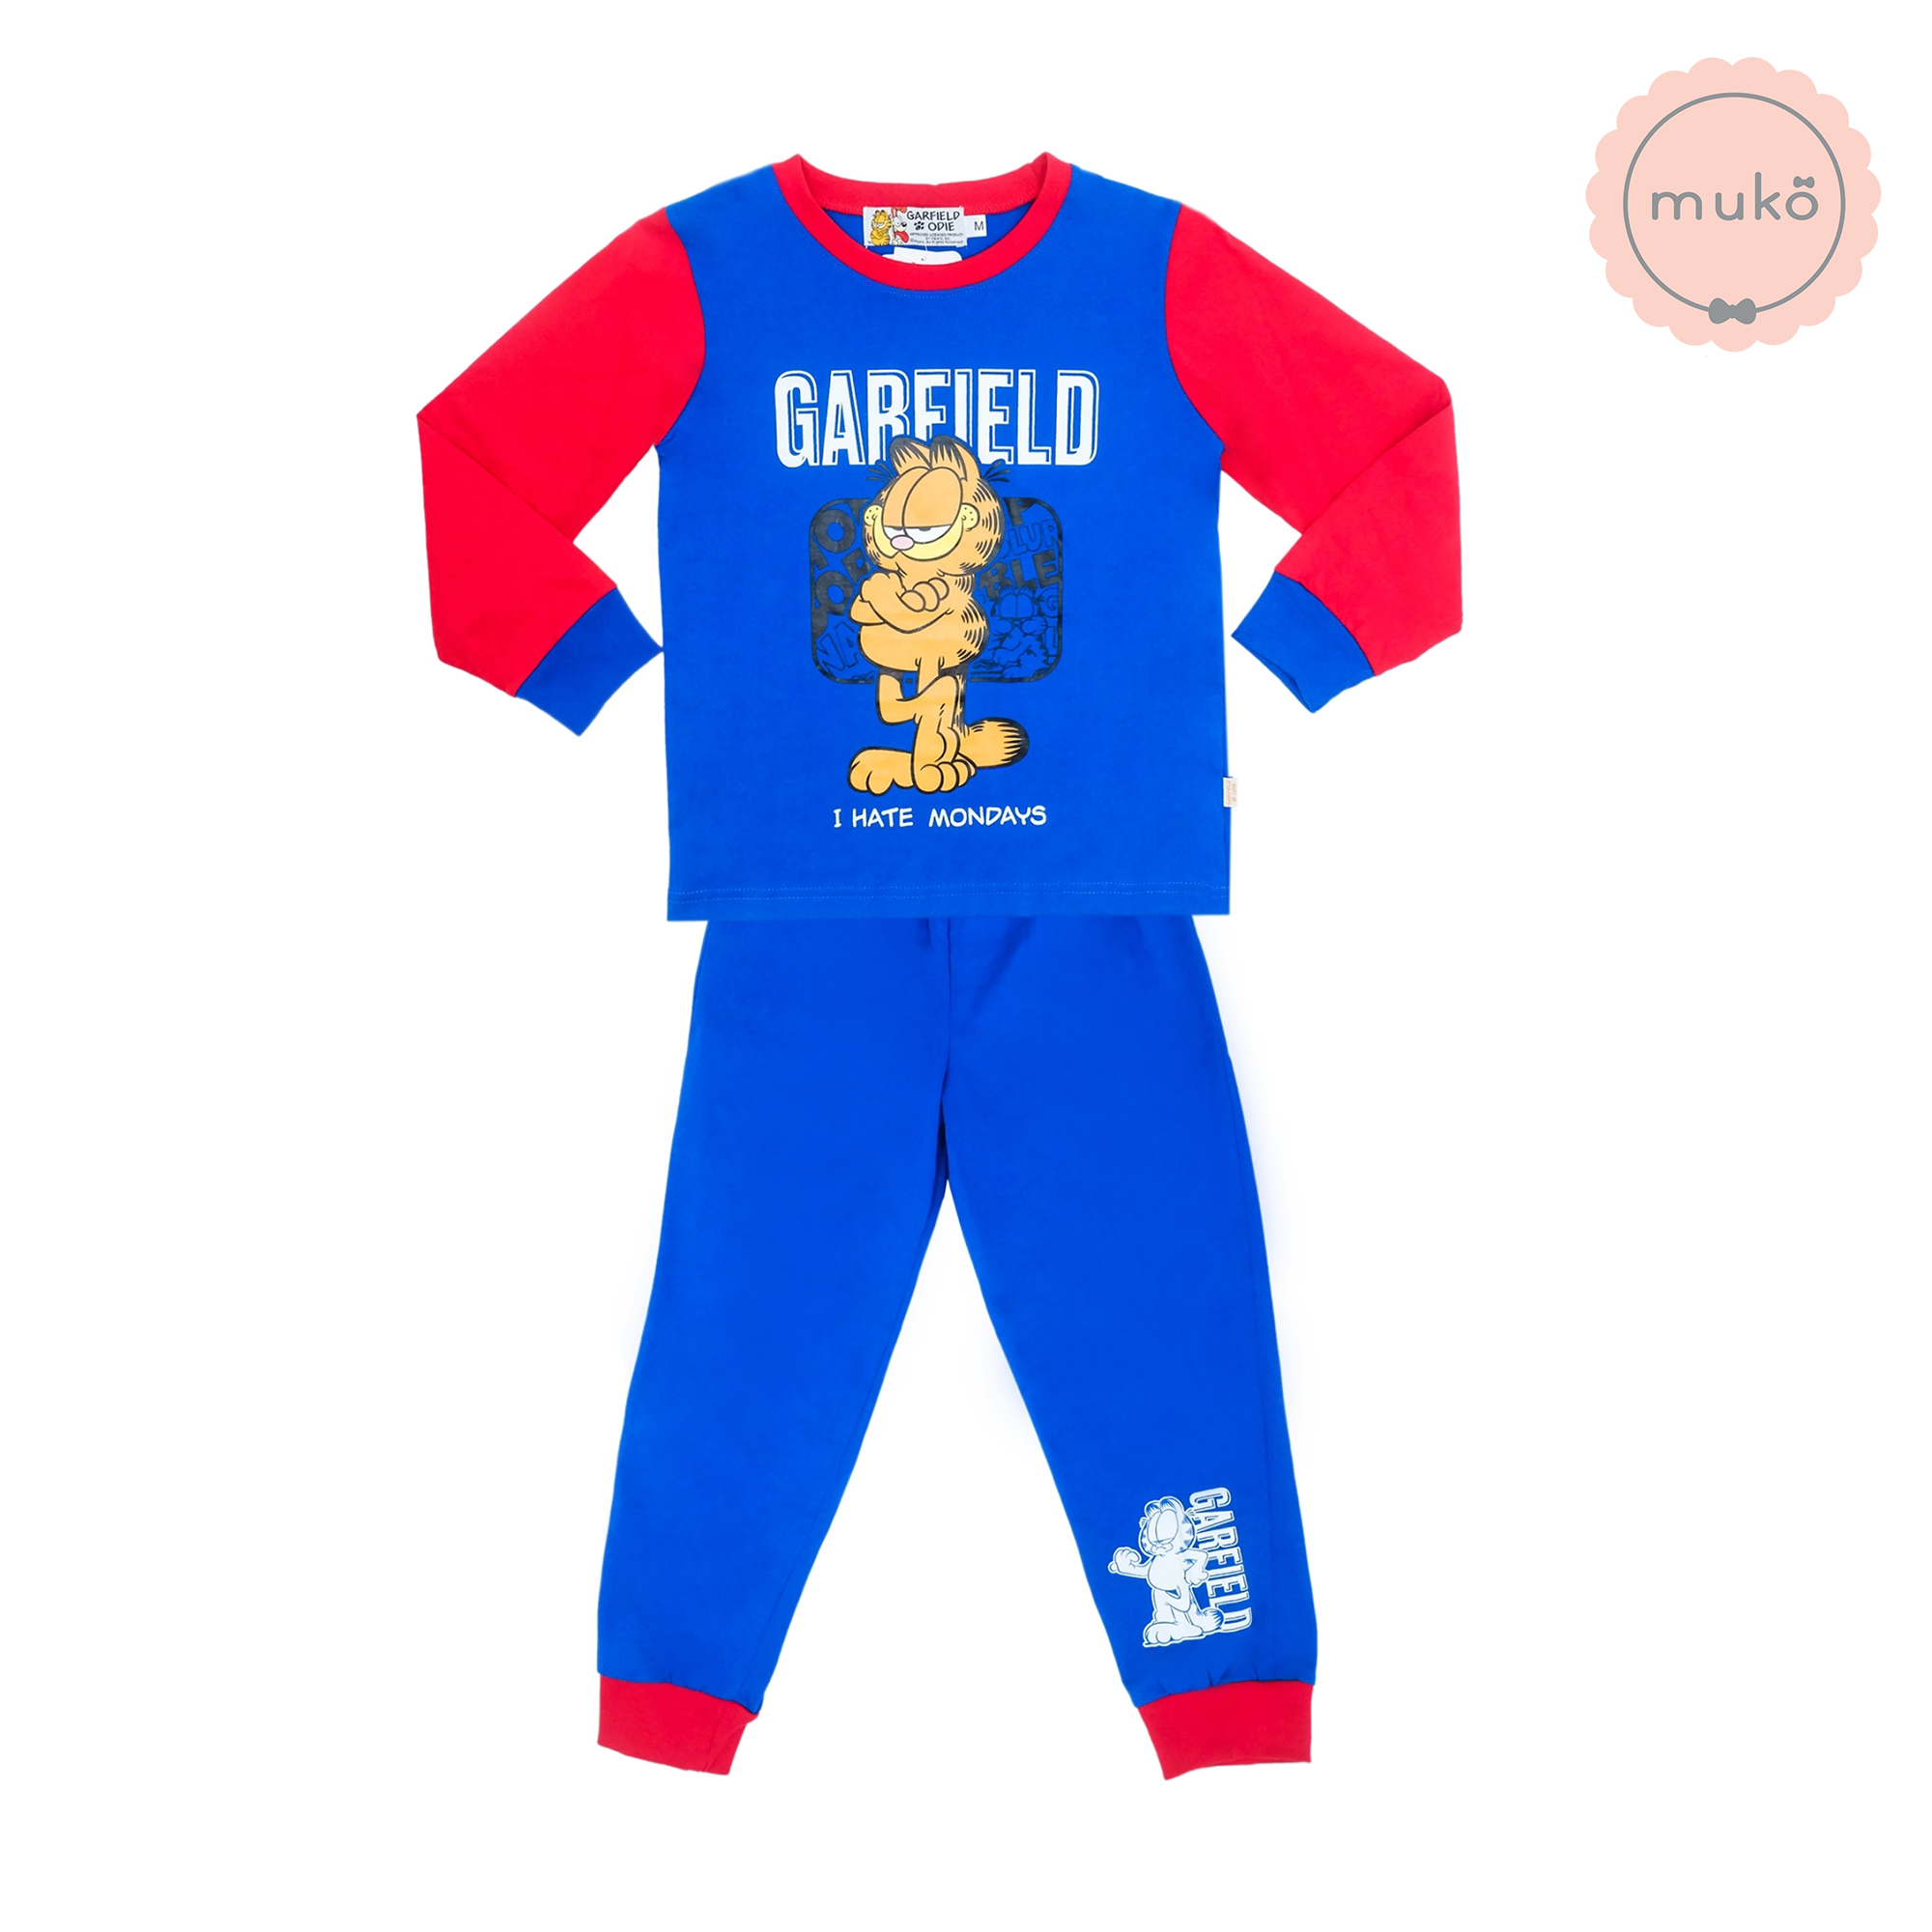 ชุดเด็ก 7-10 ขวบ แขนยาว-ขายาว (Size XL) MGF127-103-XL-Midnight Blue XL ลาย กาฟิวส์ Garfield